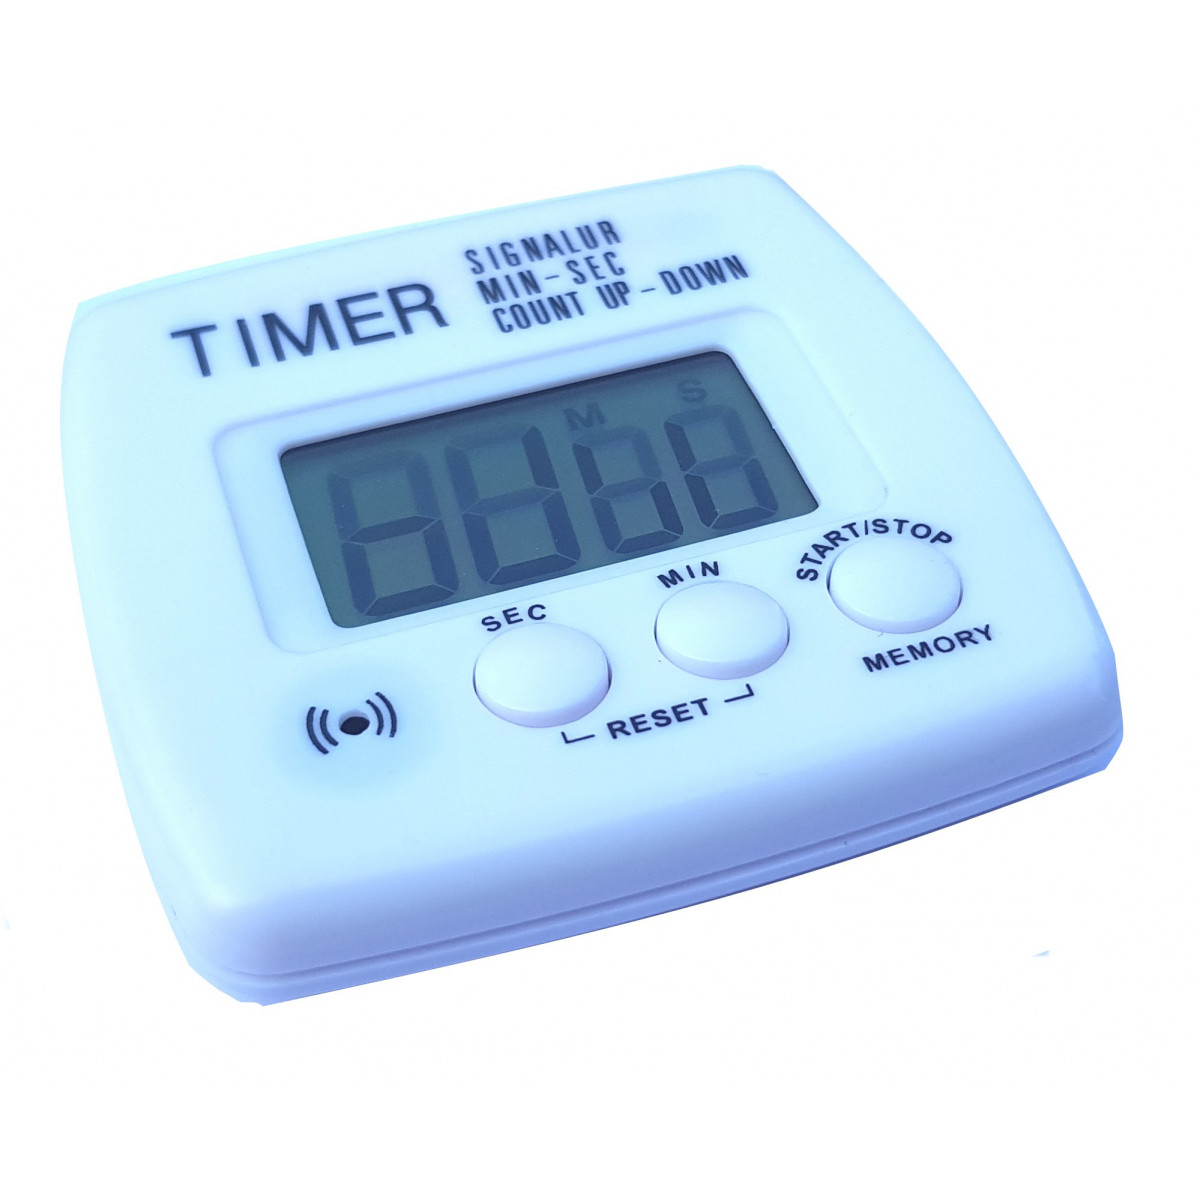 1 Timer Digitale Creativo, Timer Elettronico Manuale Multifunzionale,  Promemoria Cronometro Da Cucina